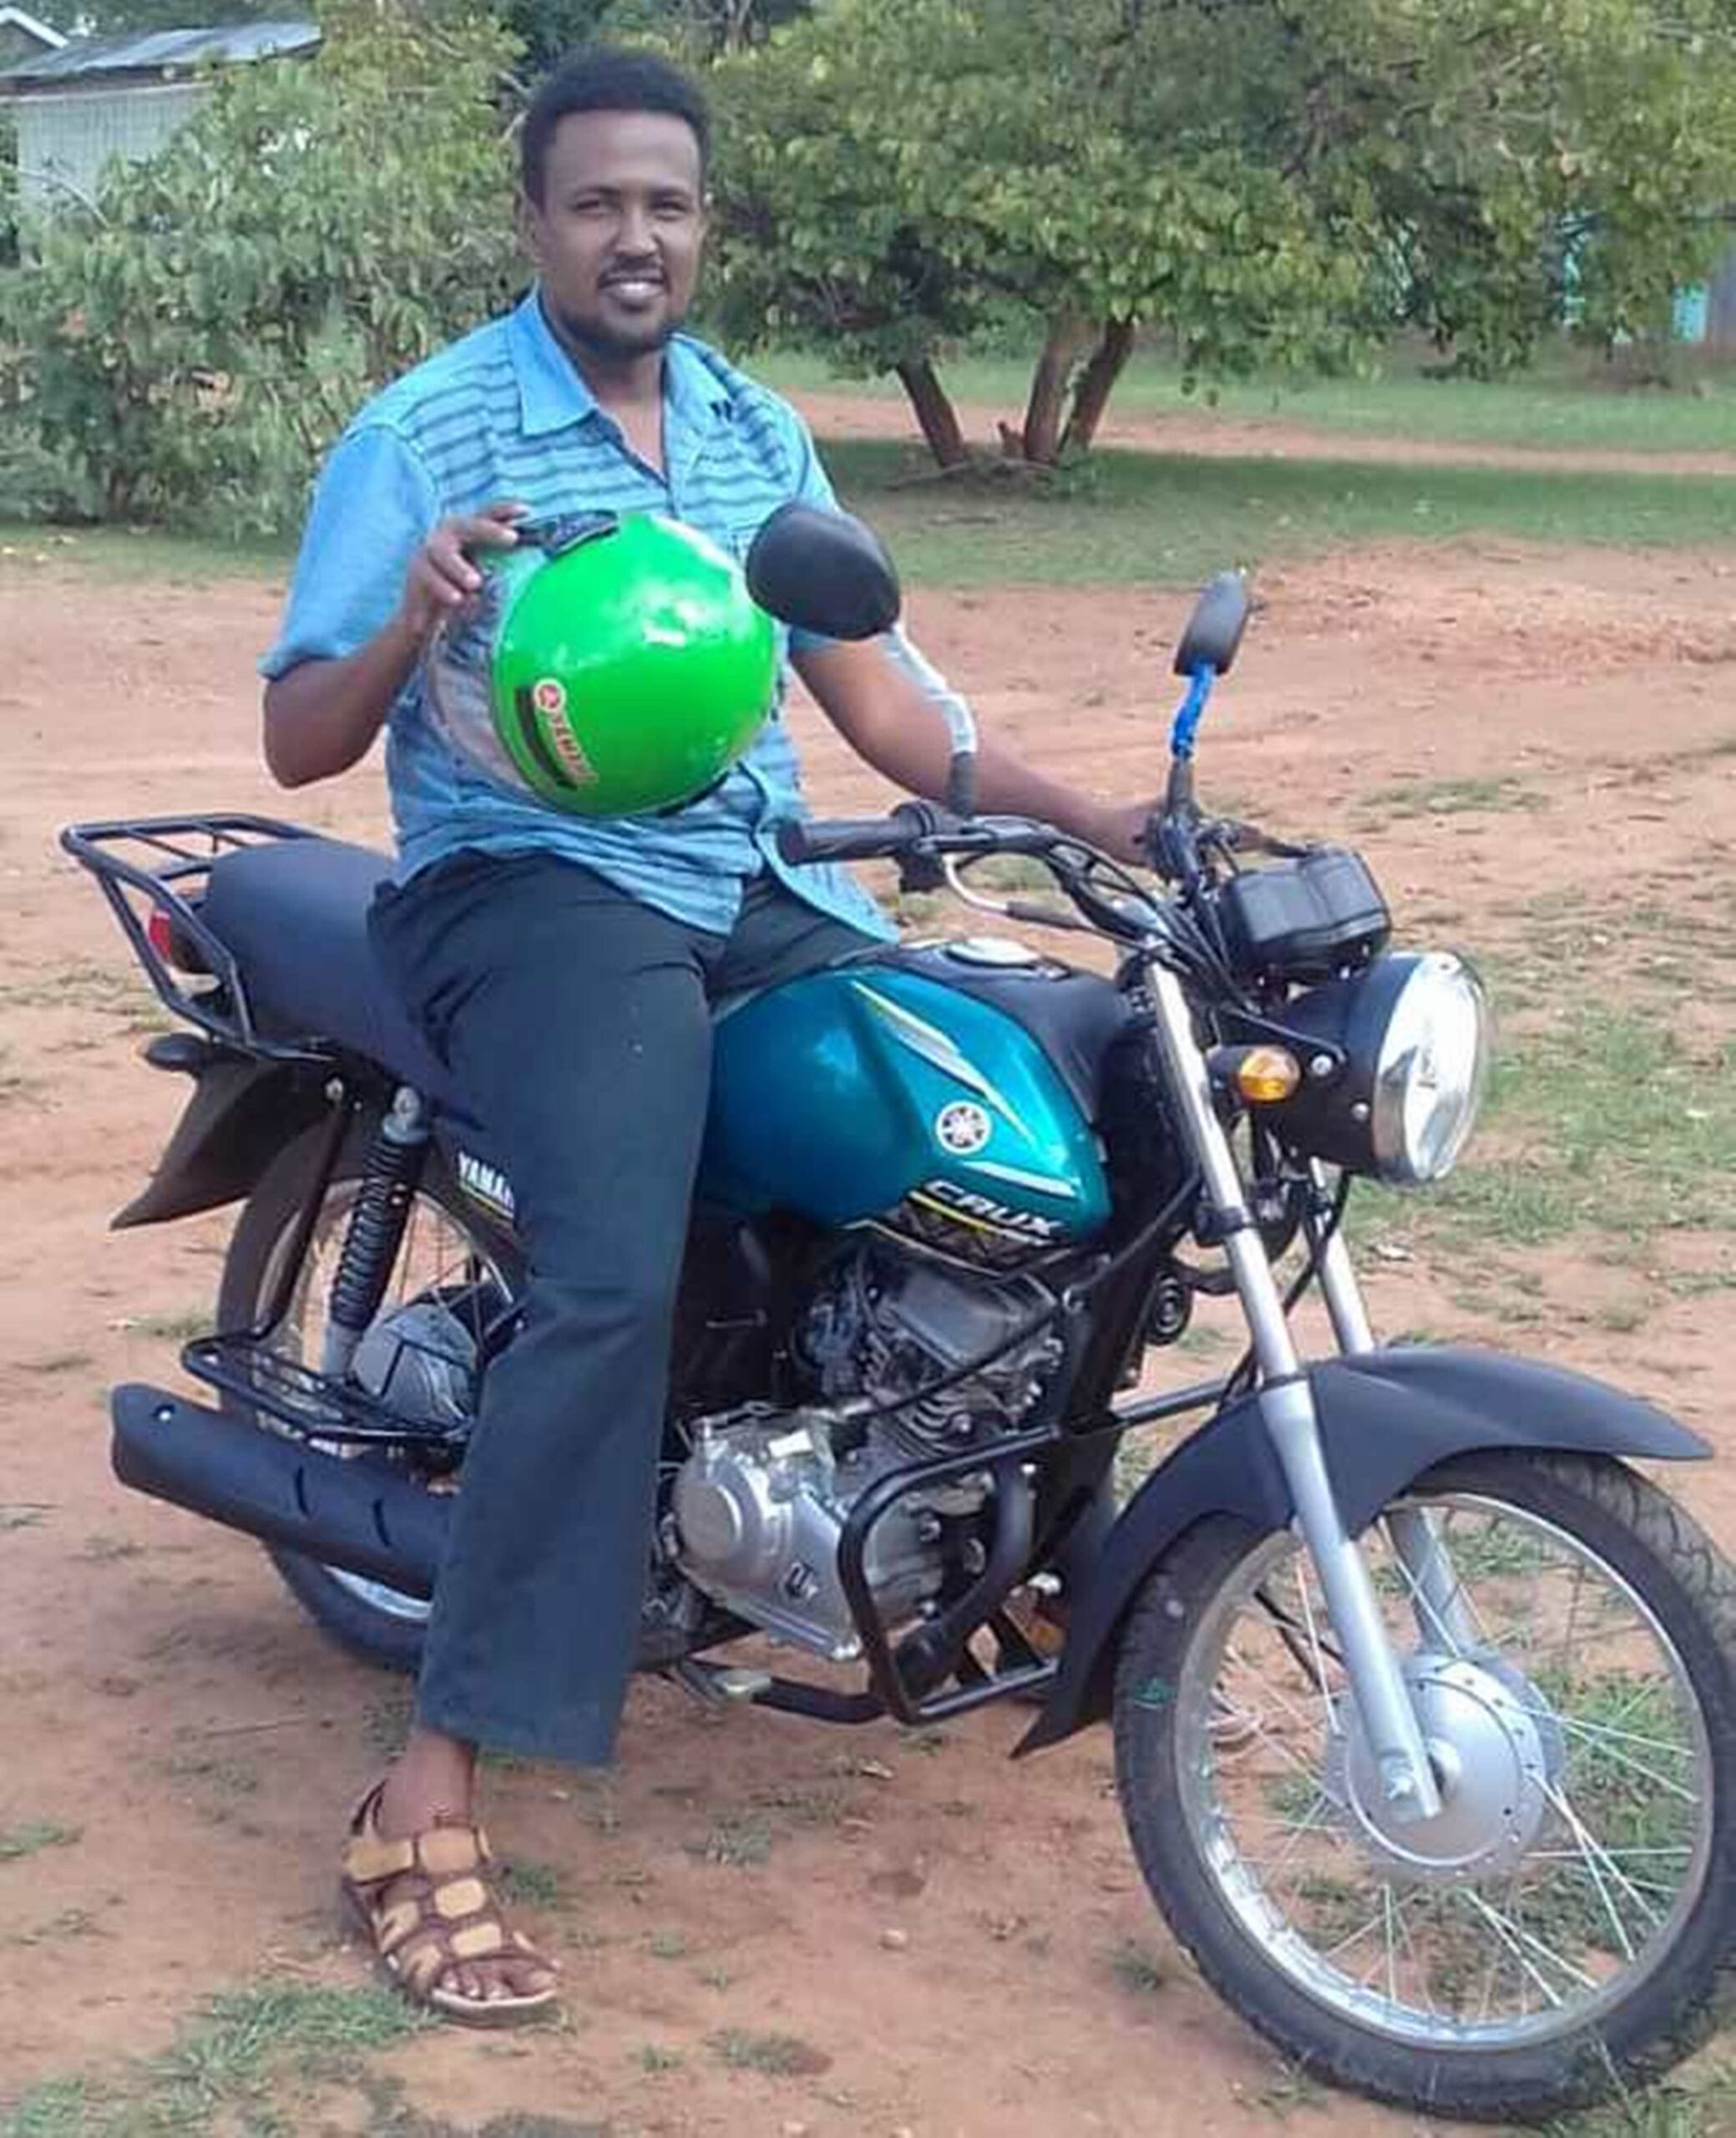 Somali man on motorcycle